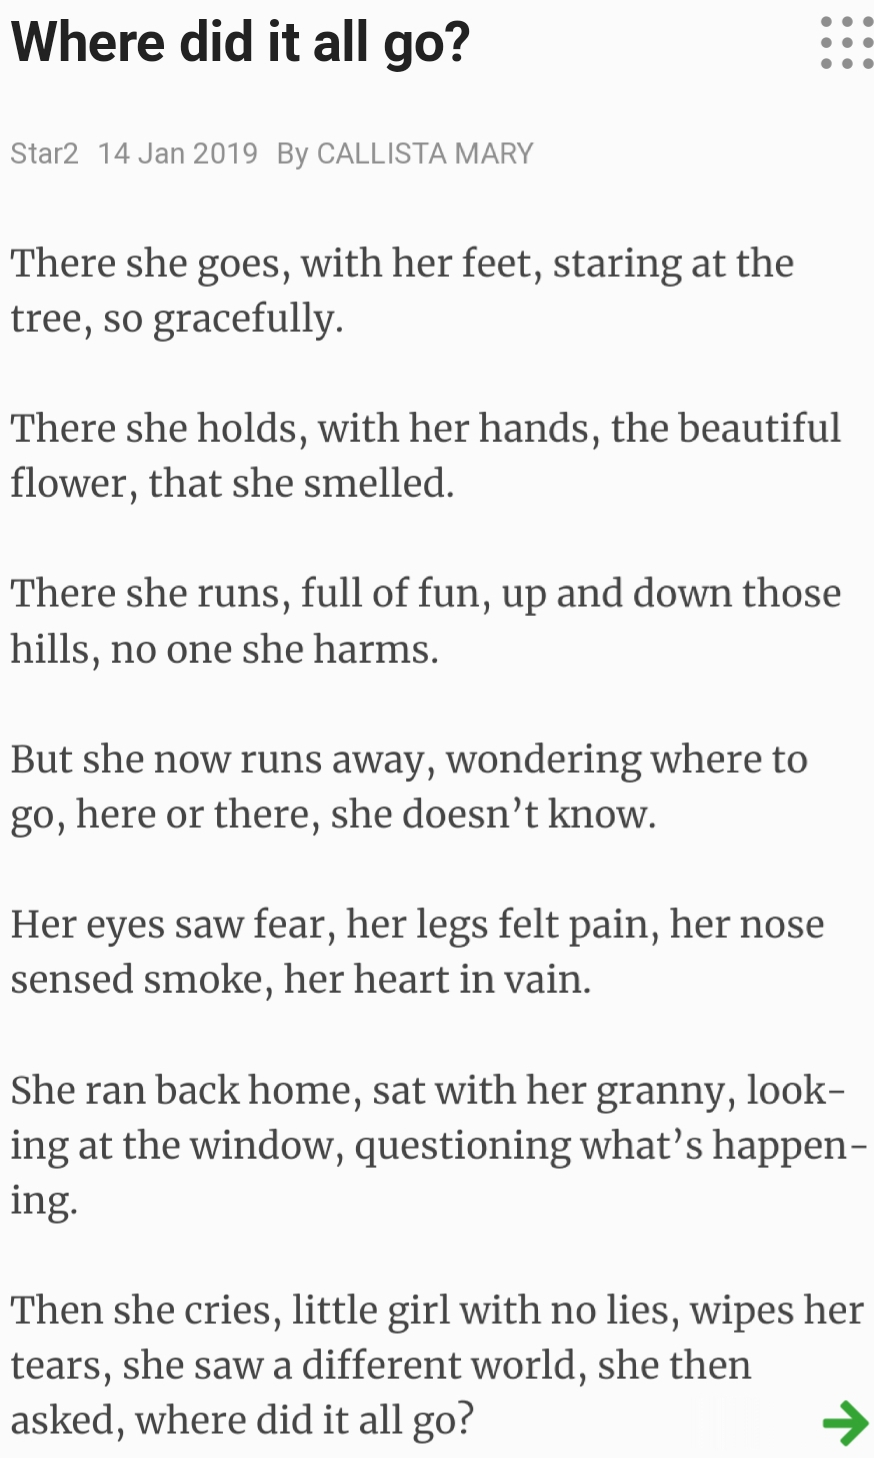 UNIT KOKURIKULUM: # English poem